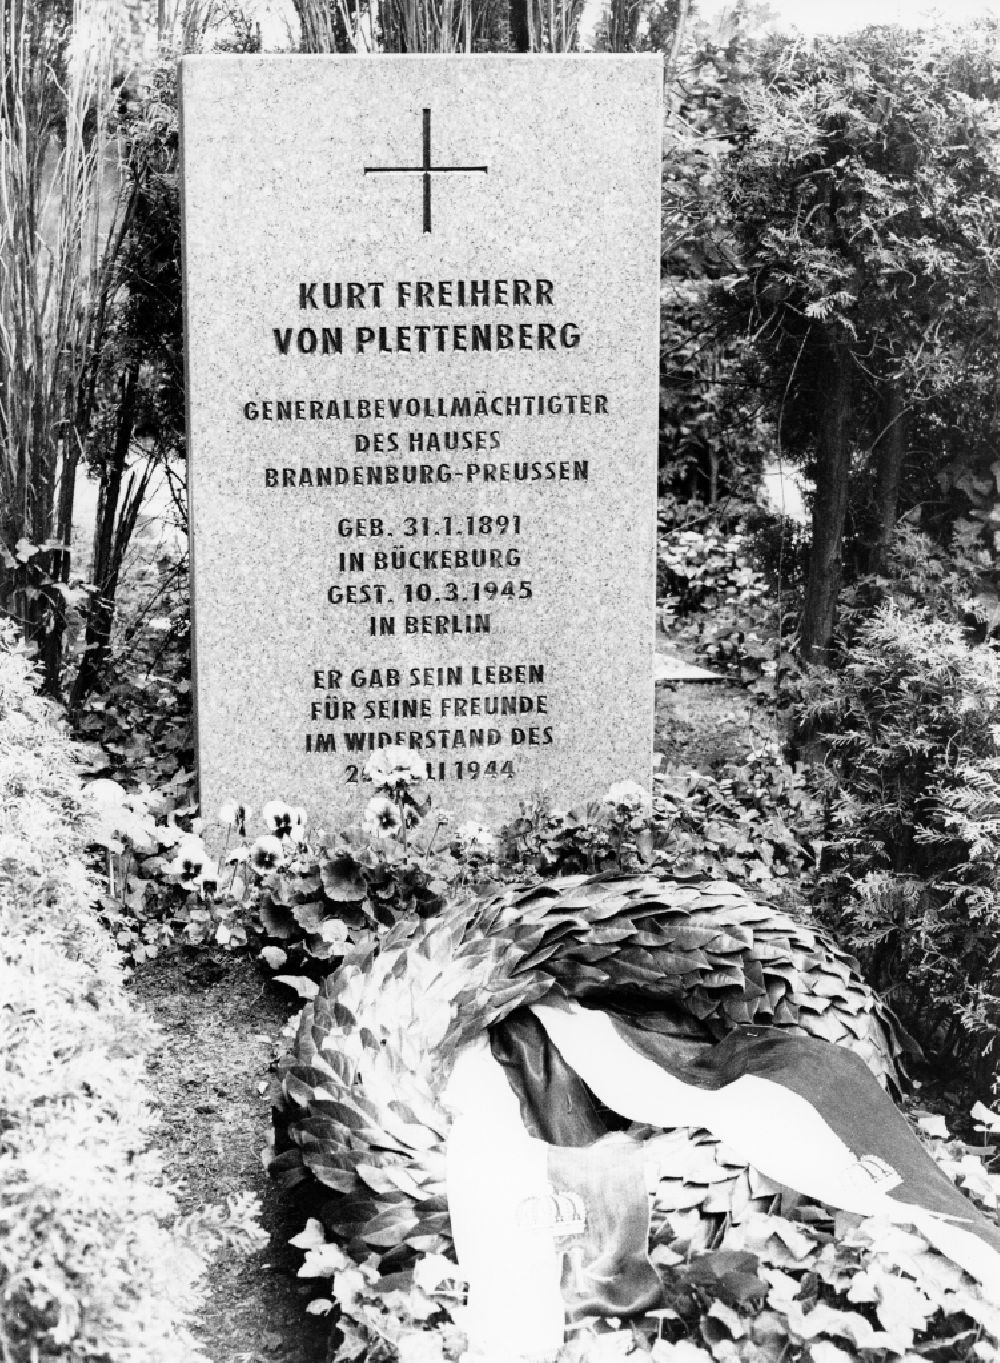 Potsdam: Erneuerter Grabstein für Kurt Freiherr von Plettenberg auf dem Bornstedter Friedhof in Potsdam in Brandenburg